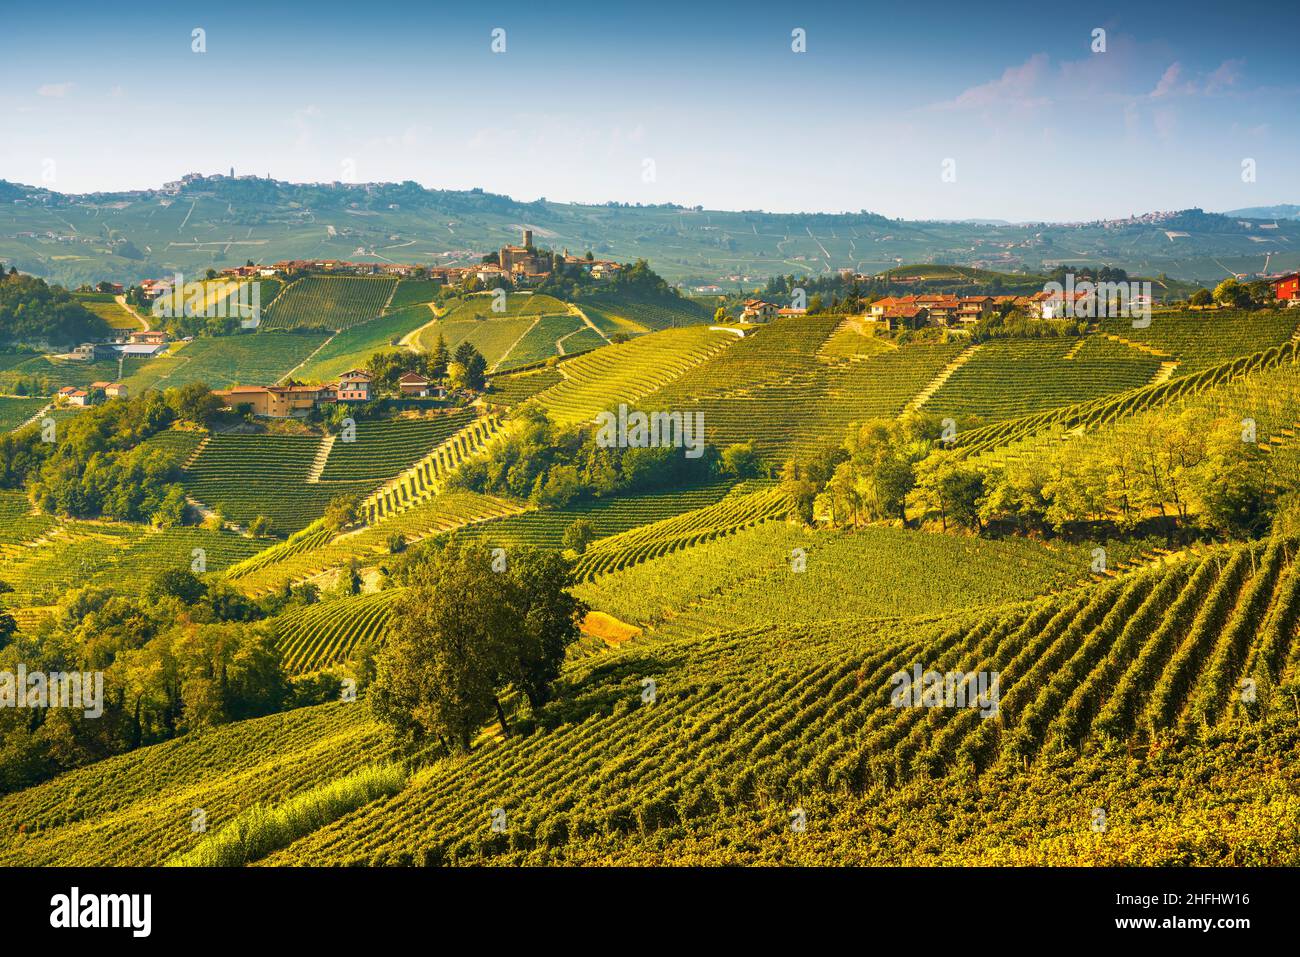 Paysage des vignobles de Langhe et panorama du village de Castiglione Falletto, site de l'UNESCO, Piémont, Nord de l'Italie Europe. Banque D'Images